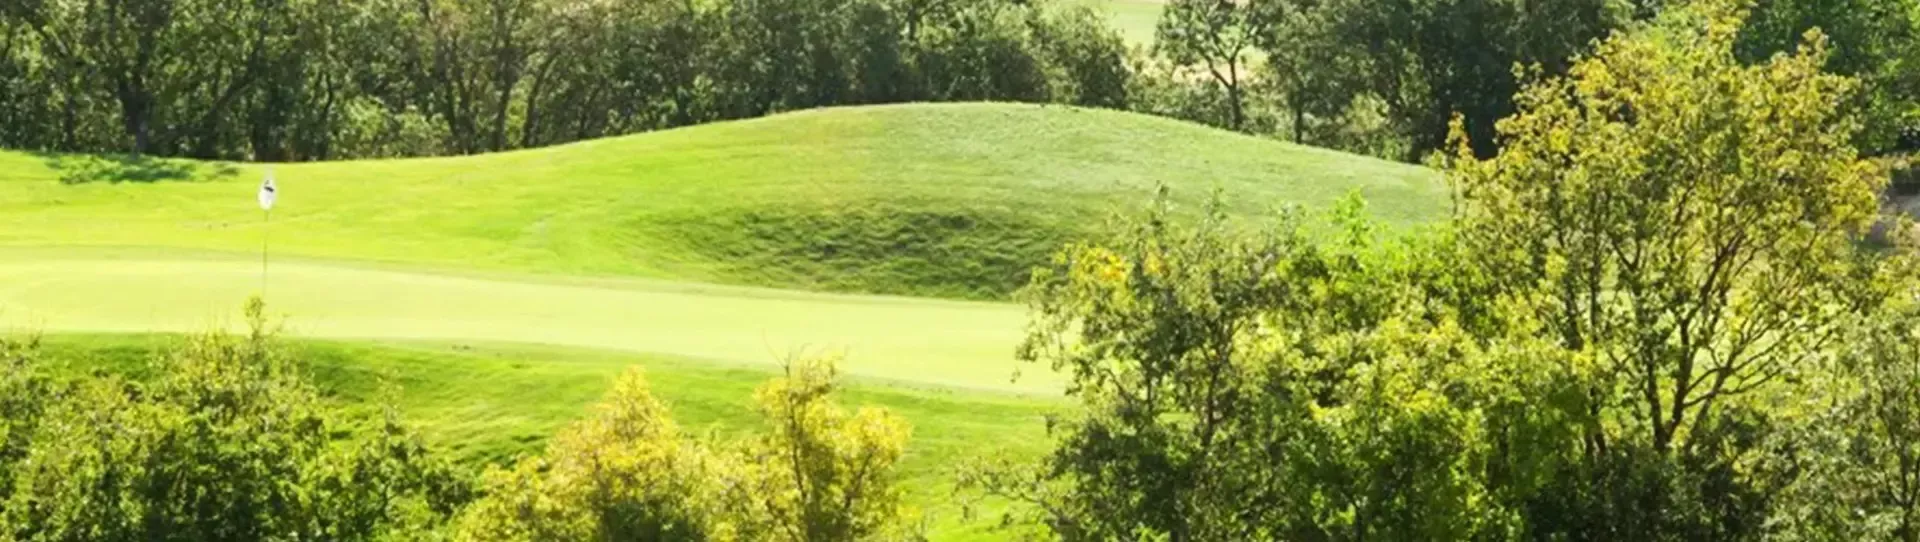 Spain golf courses - El Robledal Golf Course - Photo 3